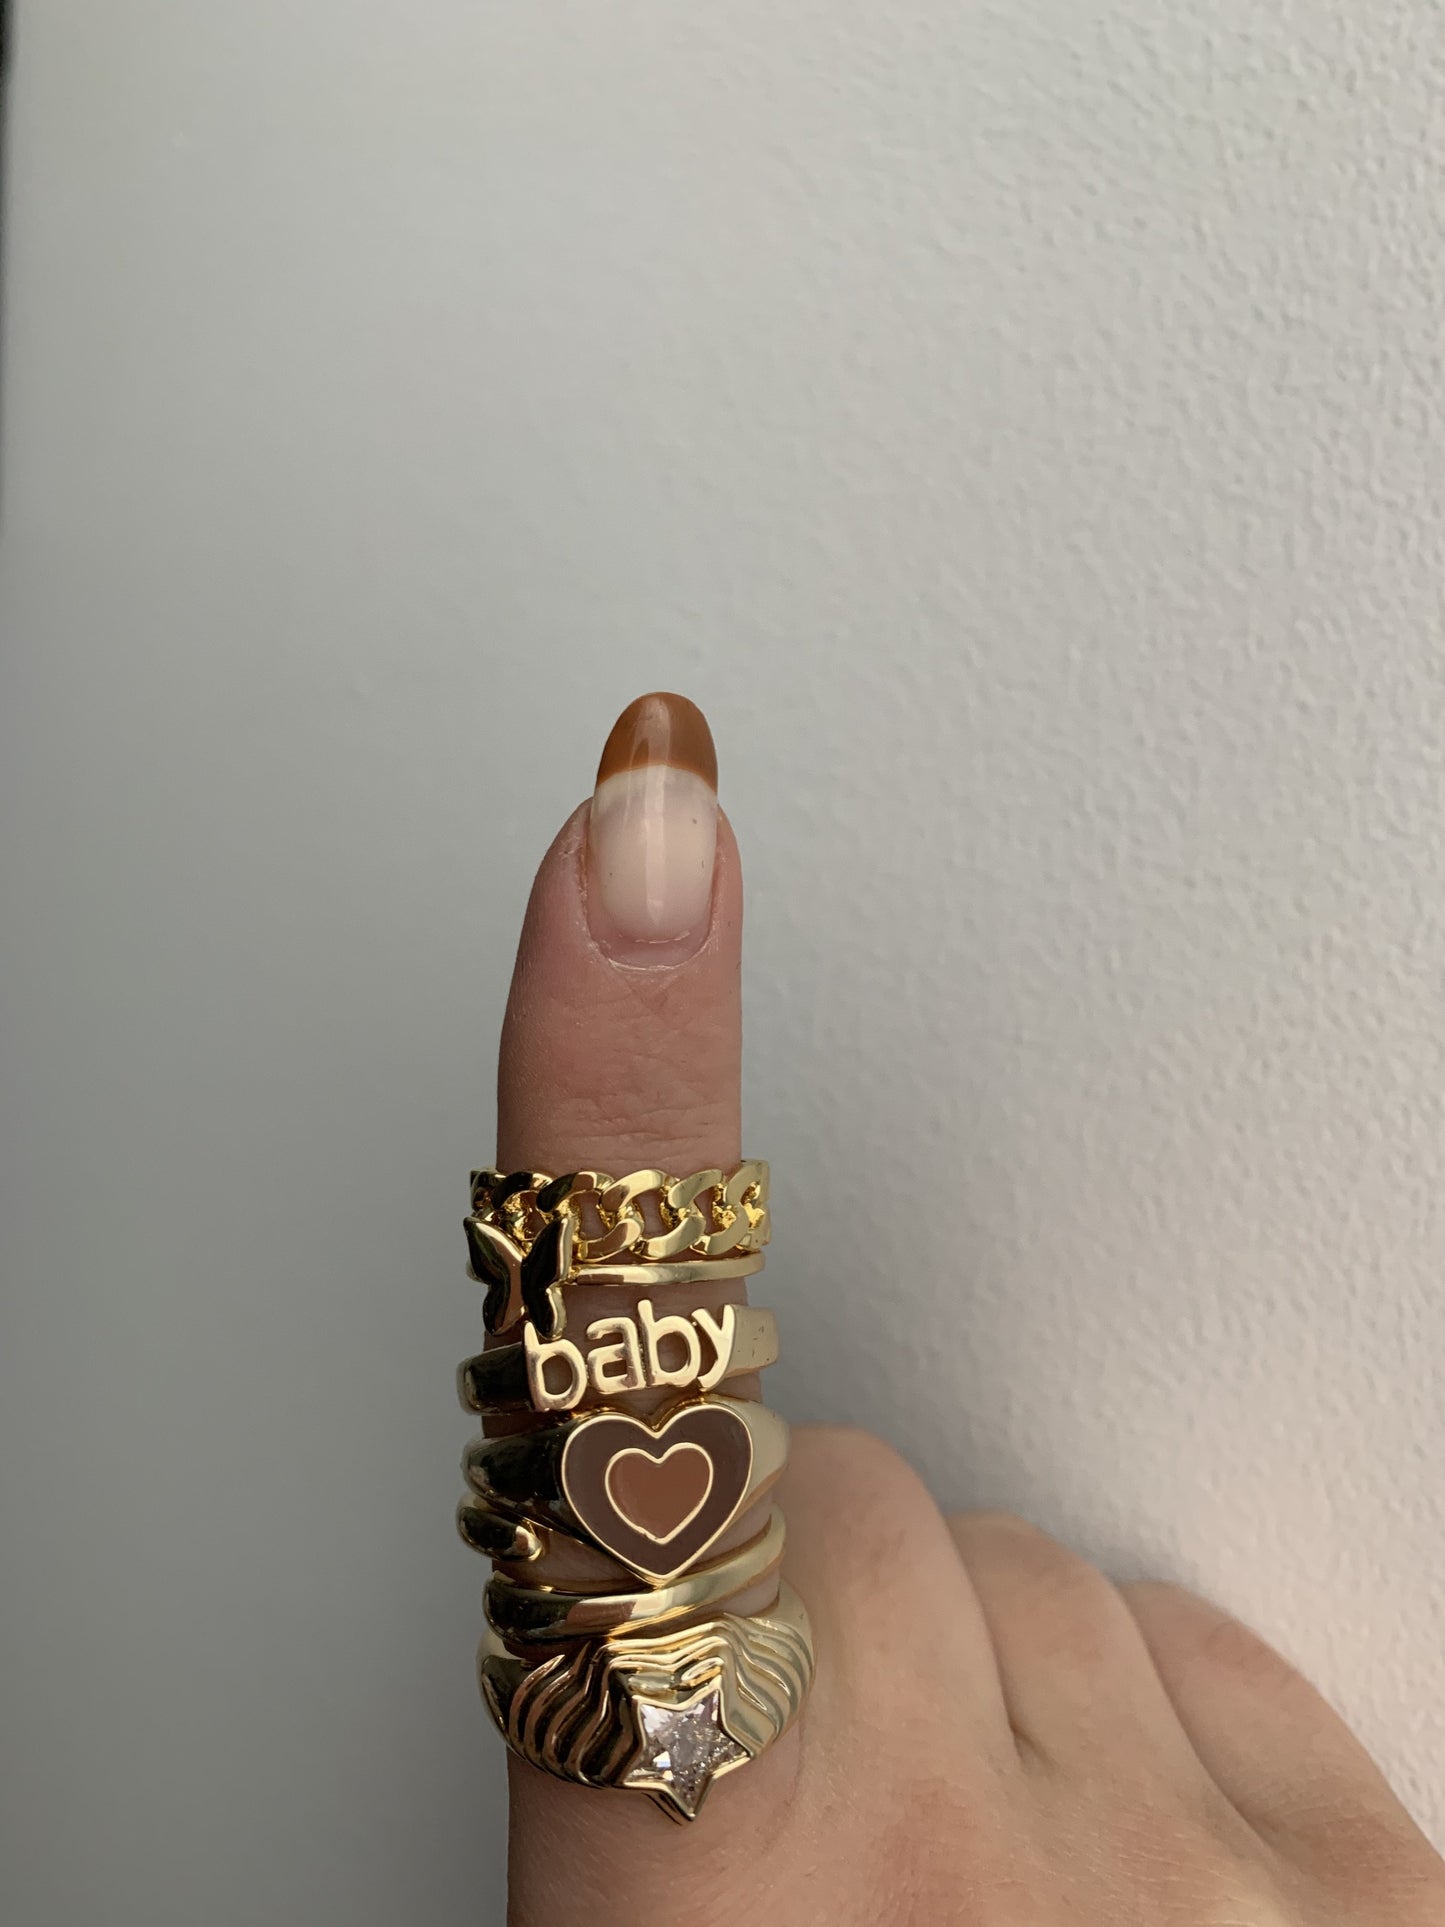 Baby Ring - Veooy